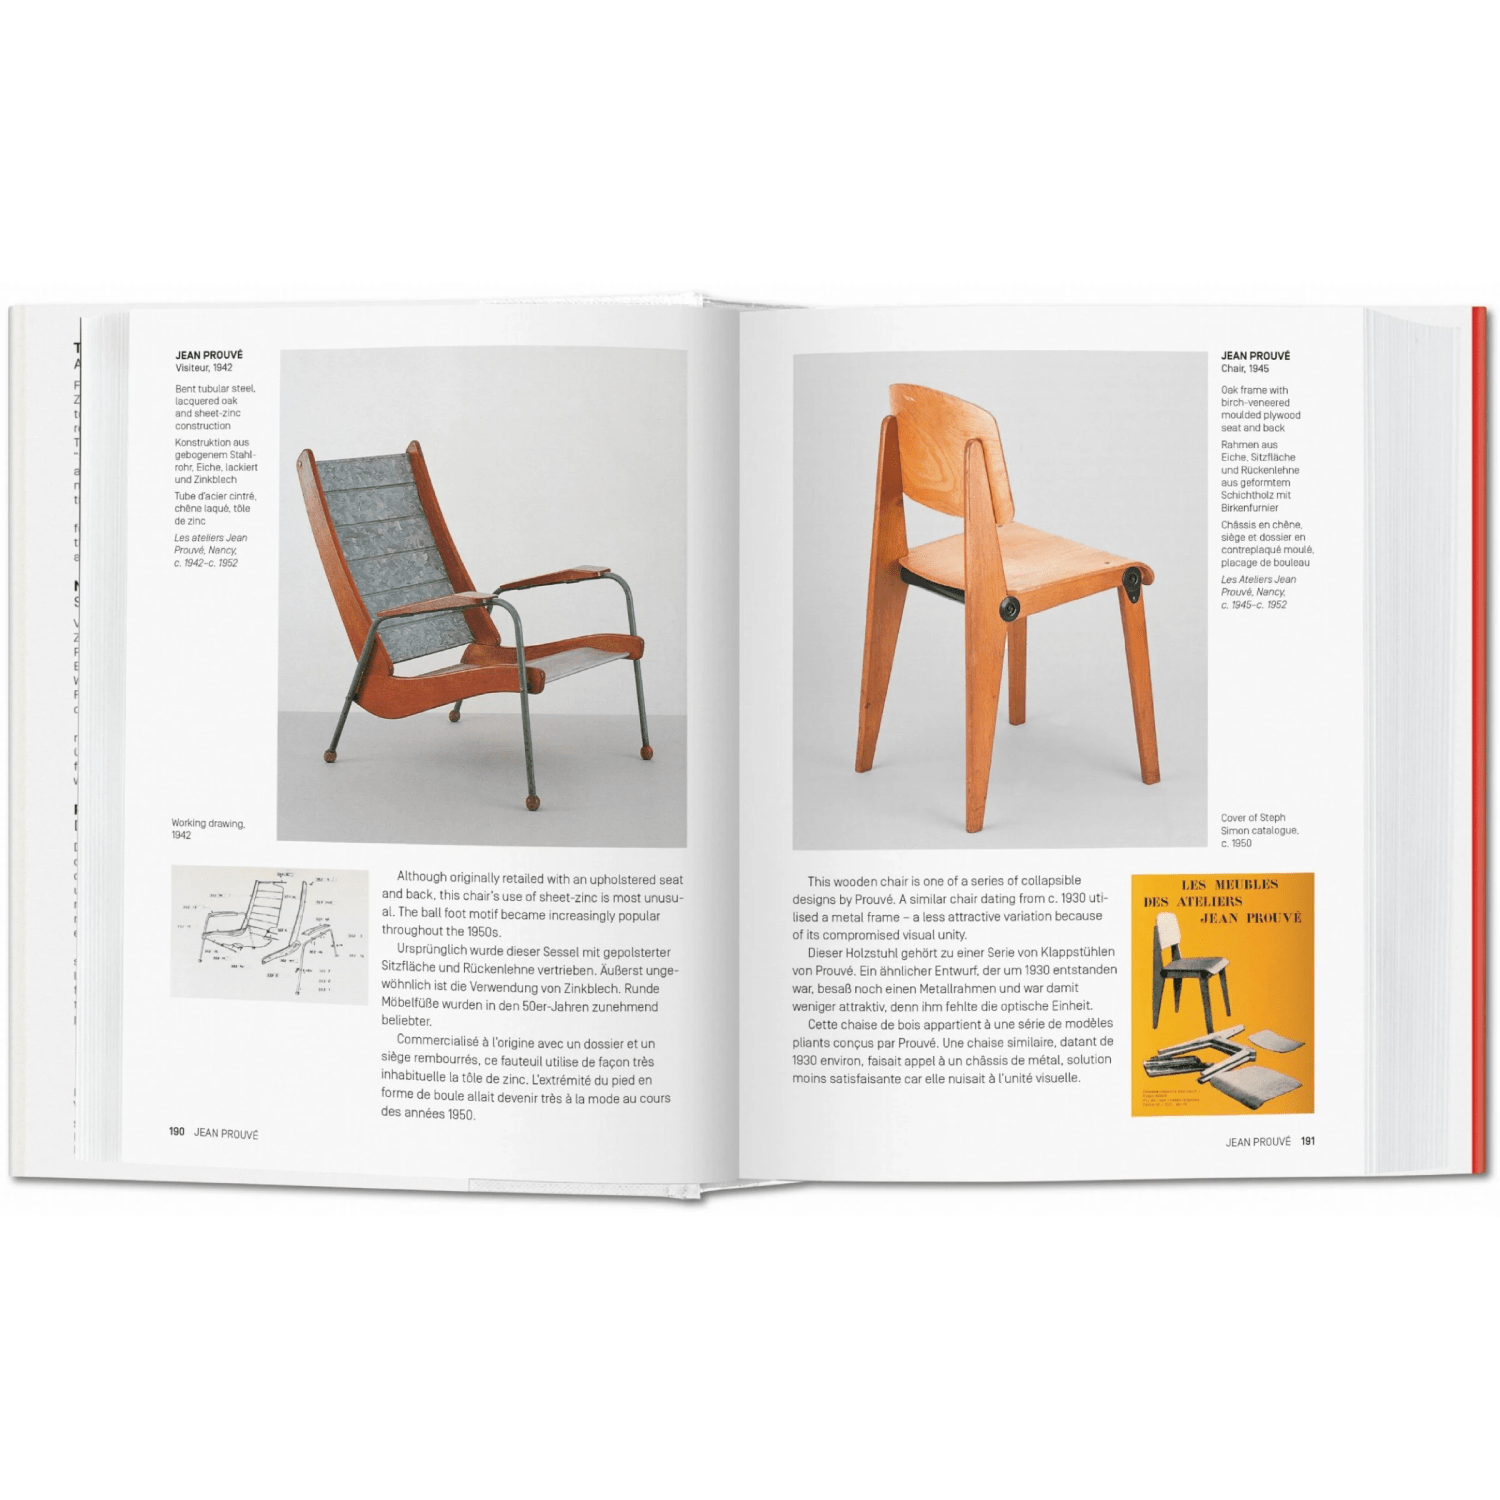 1000 Chairs. Revised and updated edition Sachbücher von Taschen Verlag